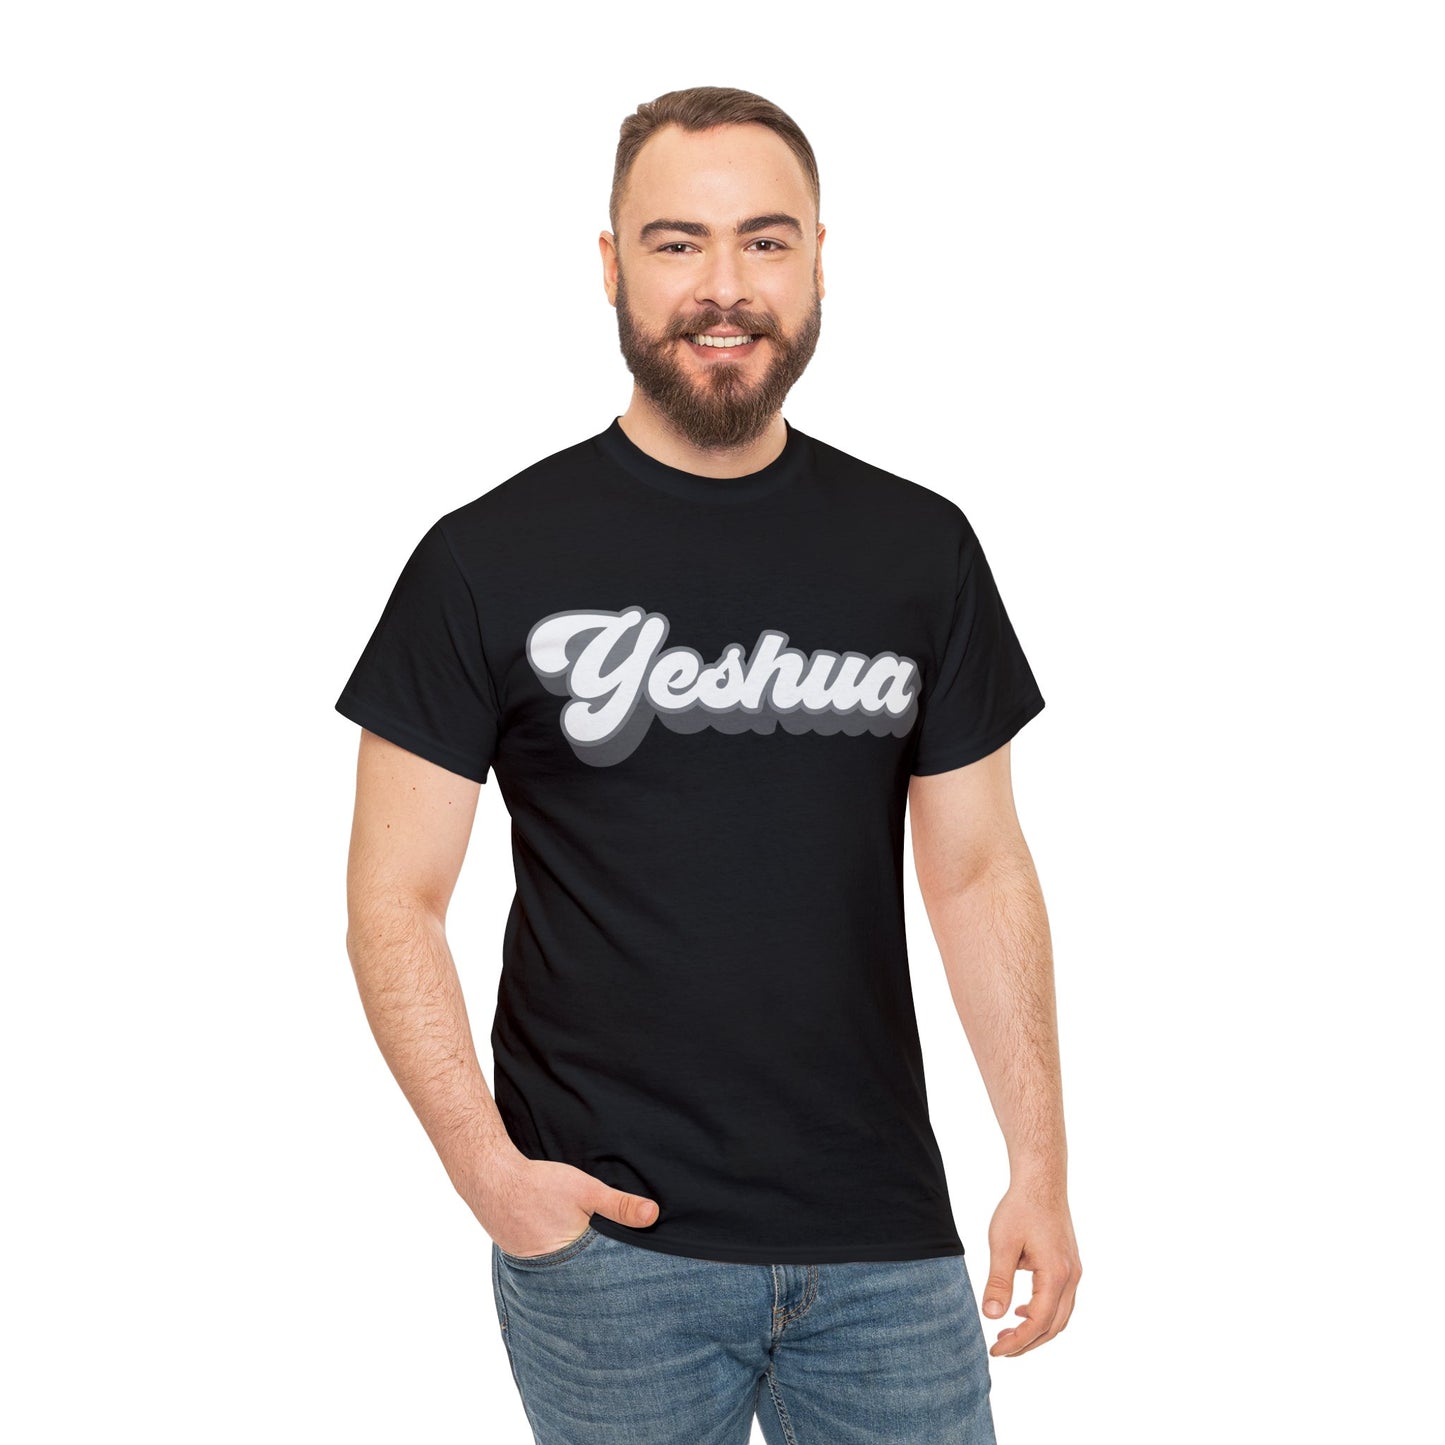 Yeshua Shirt